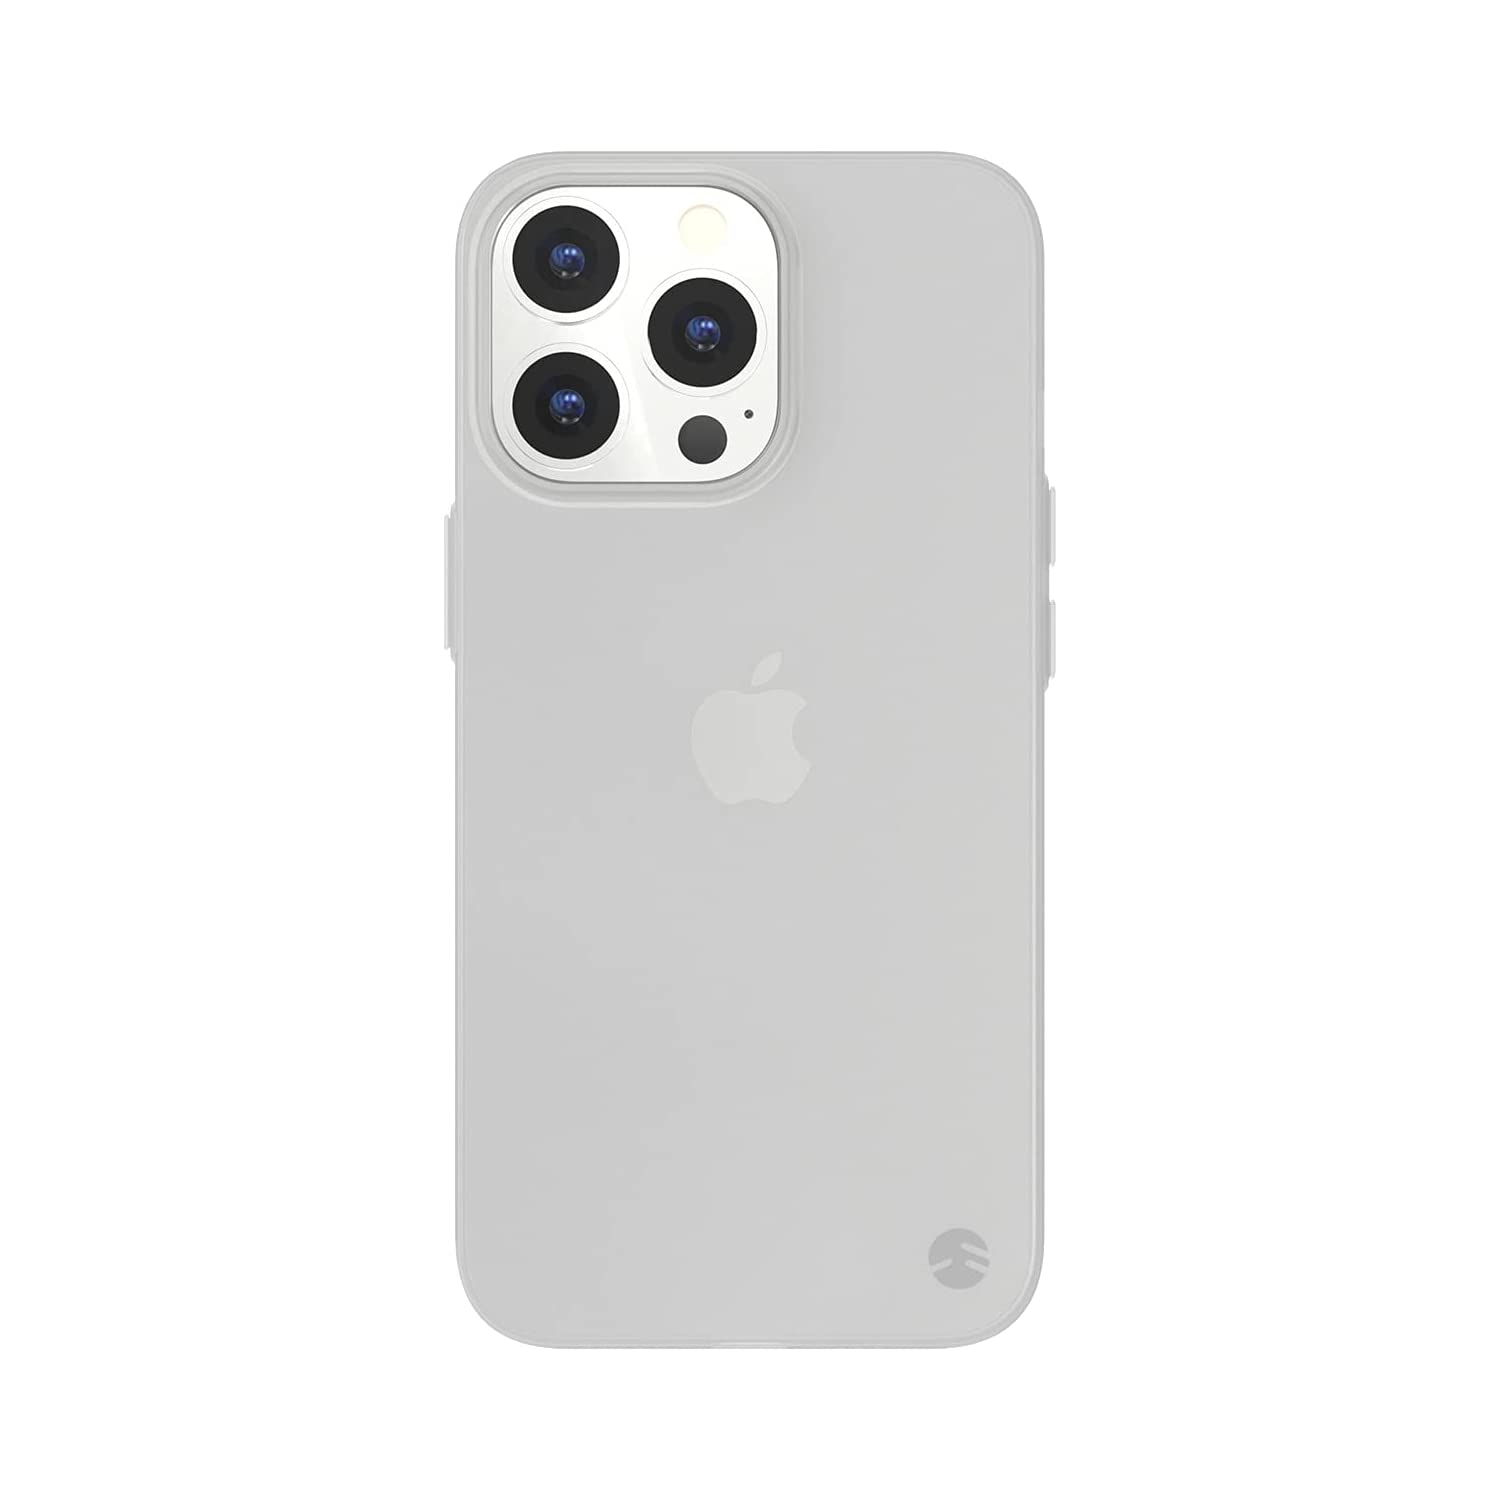 発売日前に準備しておきたい「iPhone 13 Pro用ケース」おすすめ6選